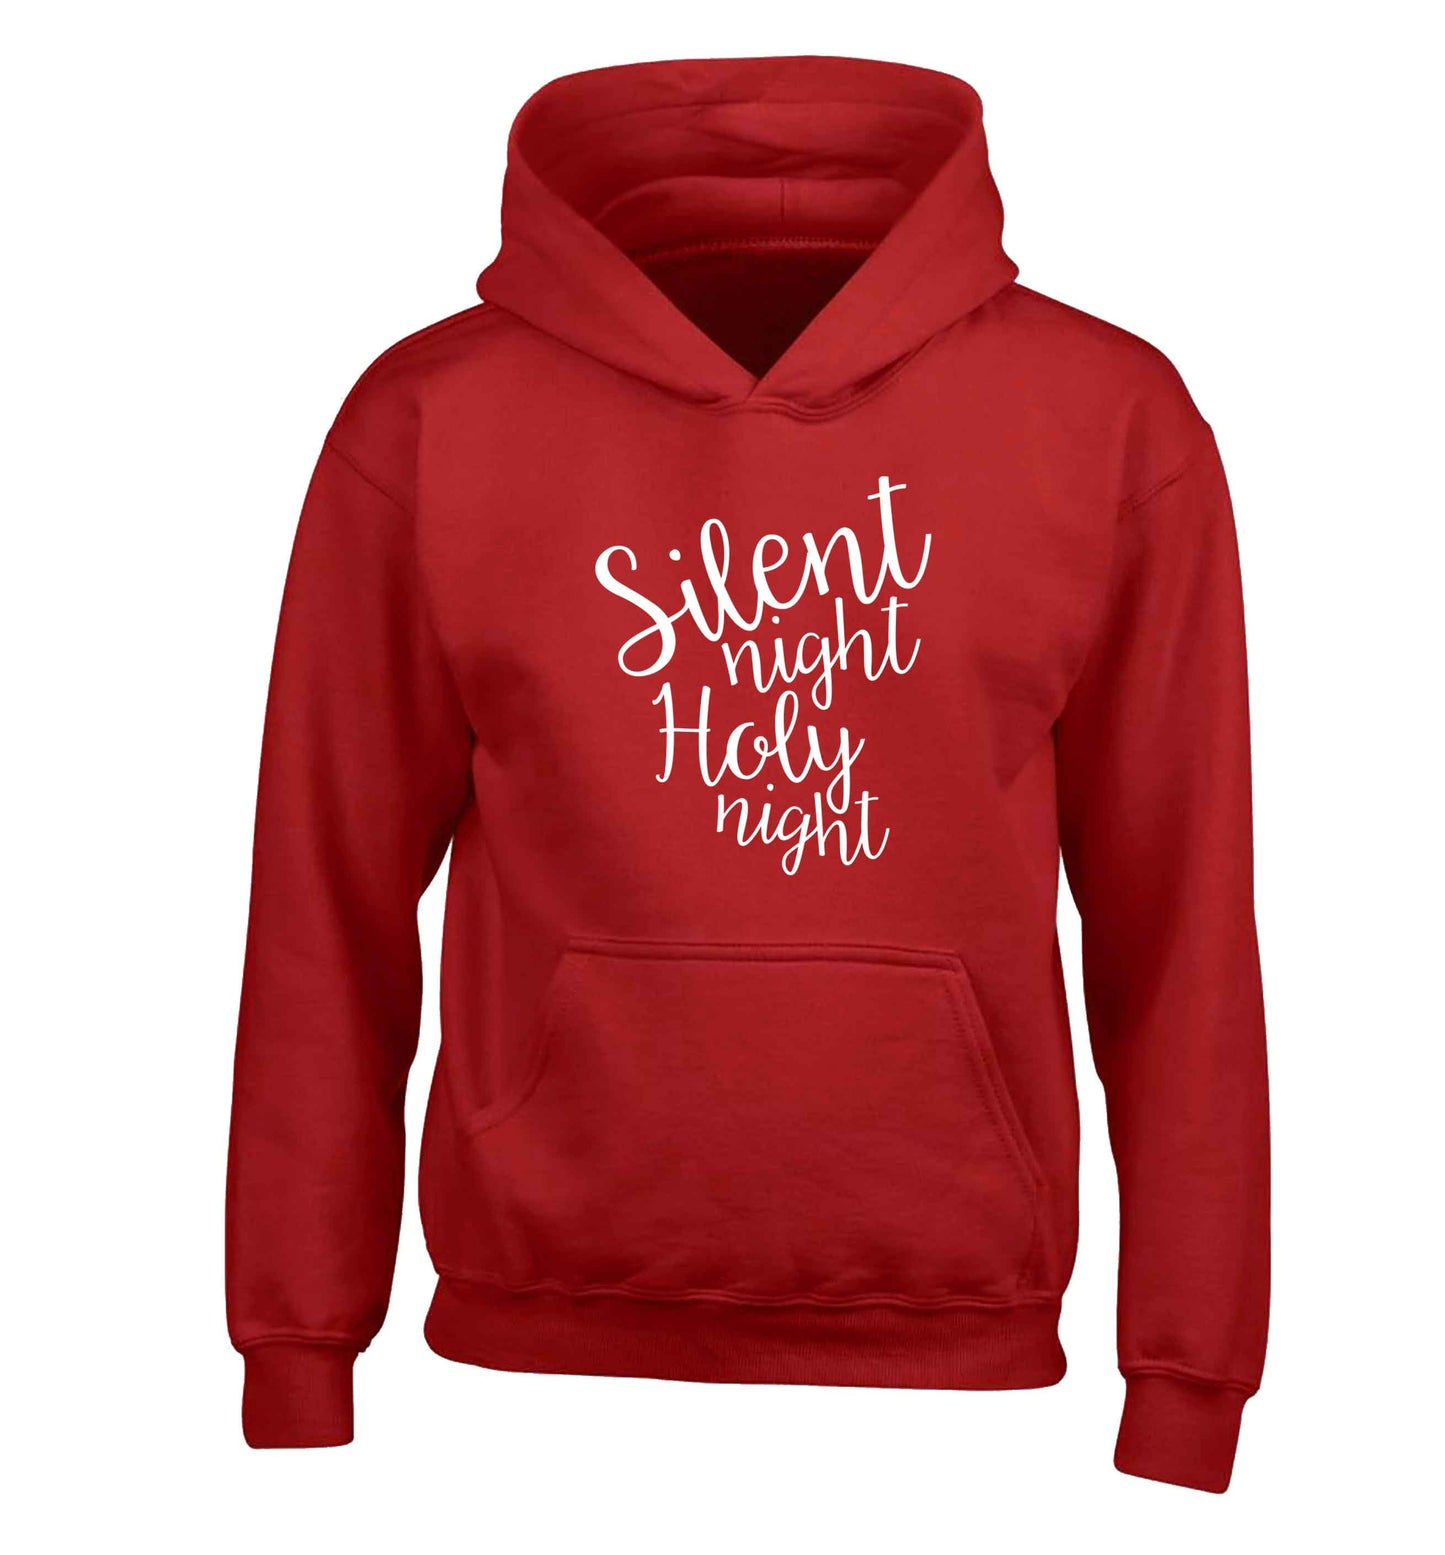 Silent night holy night children's red hoodie 12-13 Years